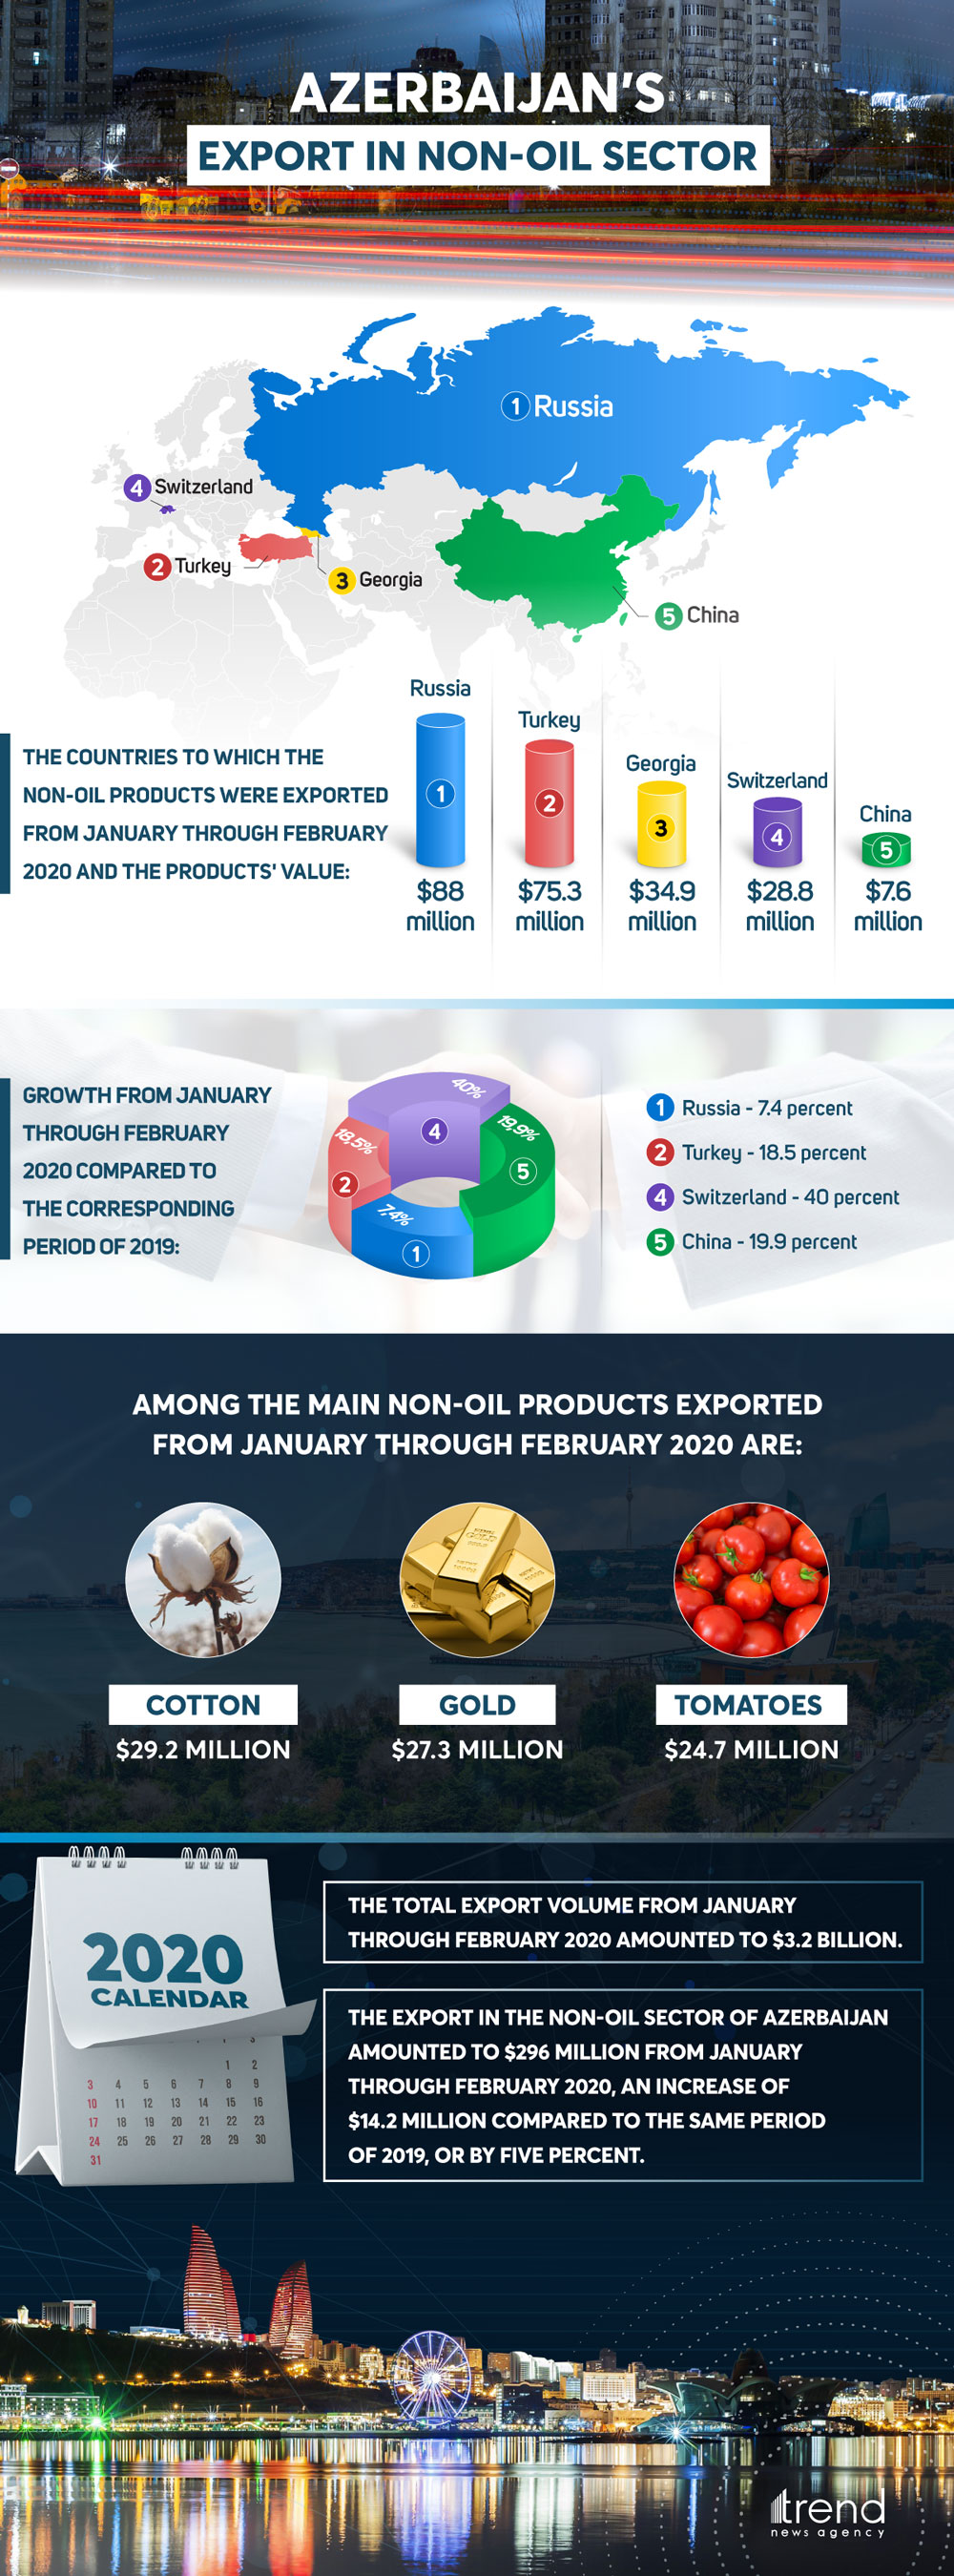 Azerbaijan’s export in non-oil sector